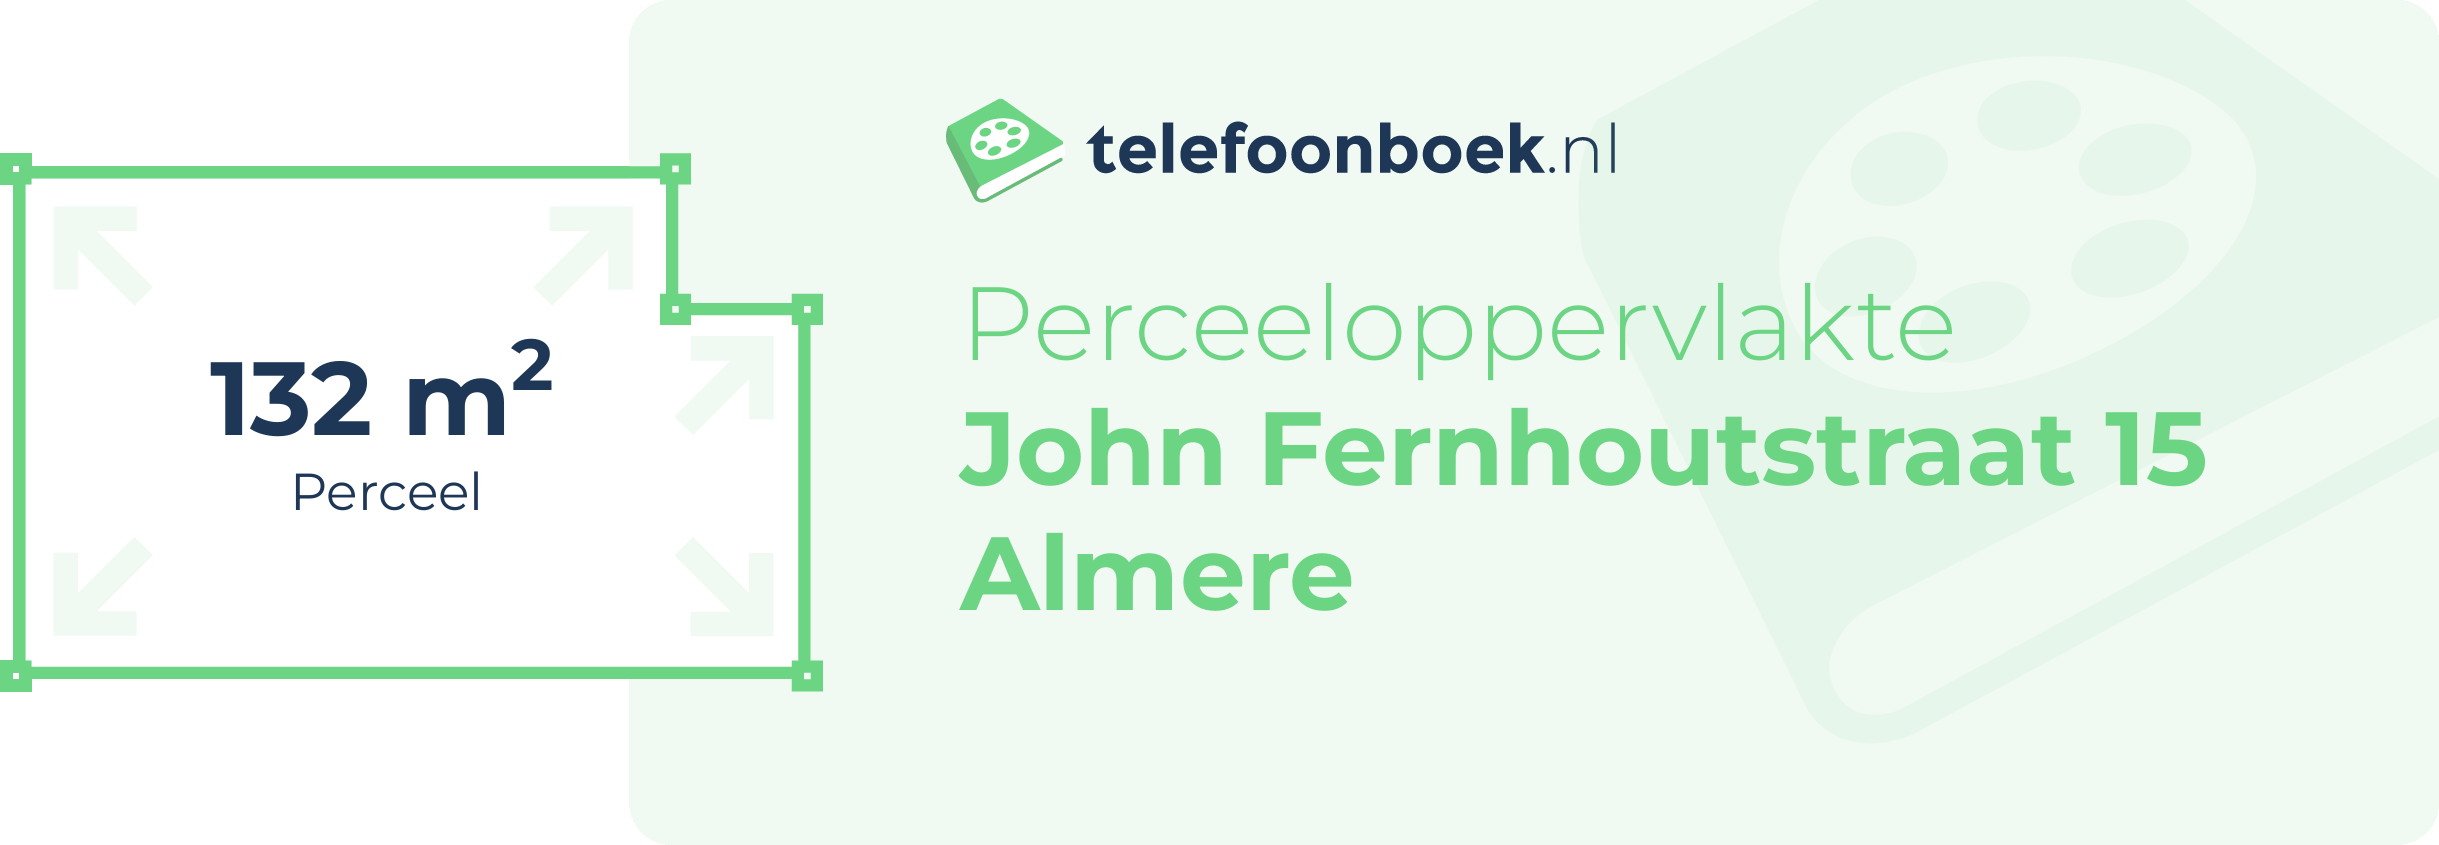 Perceeloppervlakte John Fernhoutstraat 15 Almere